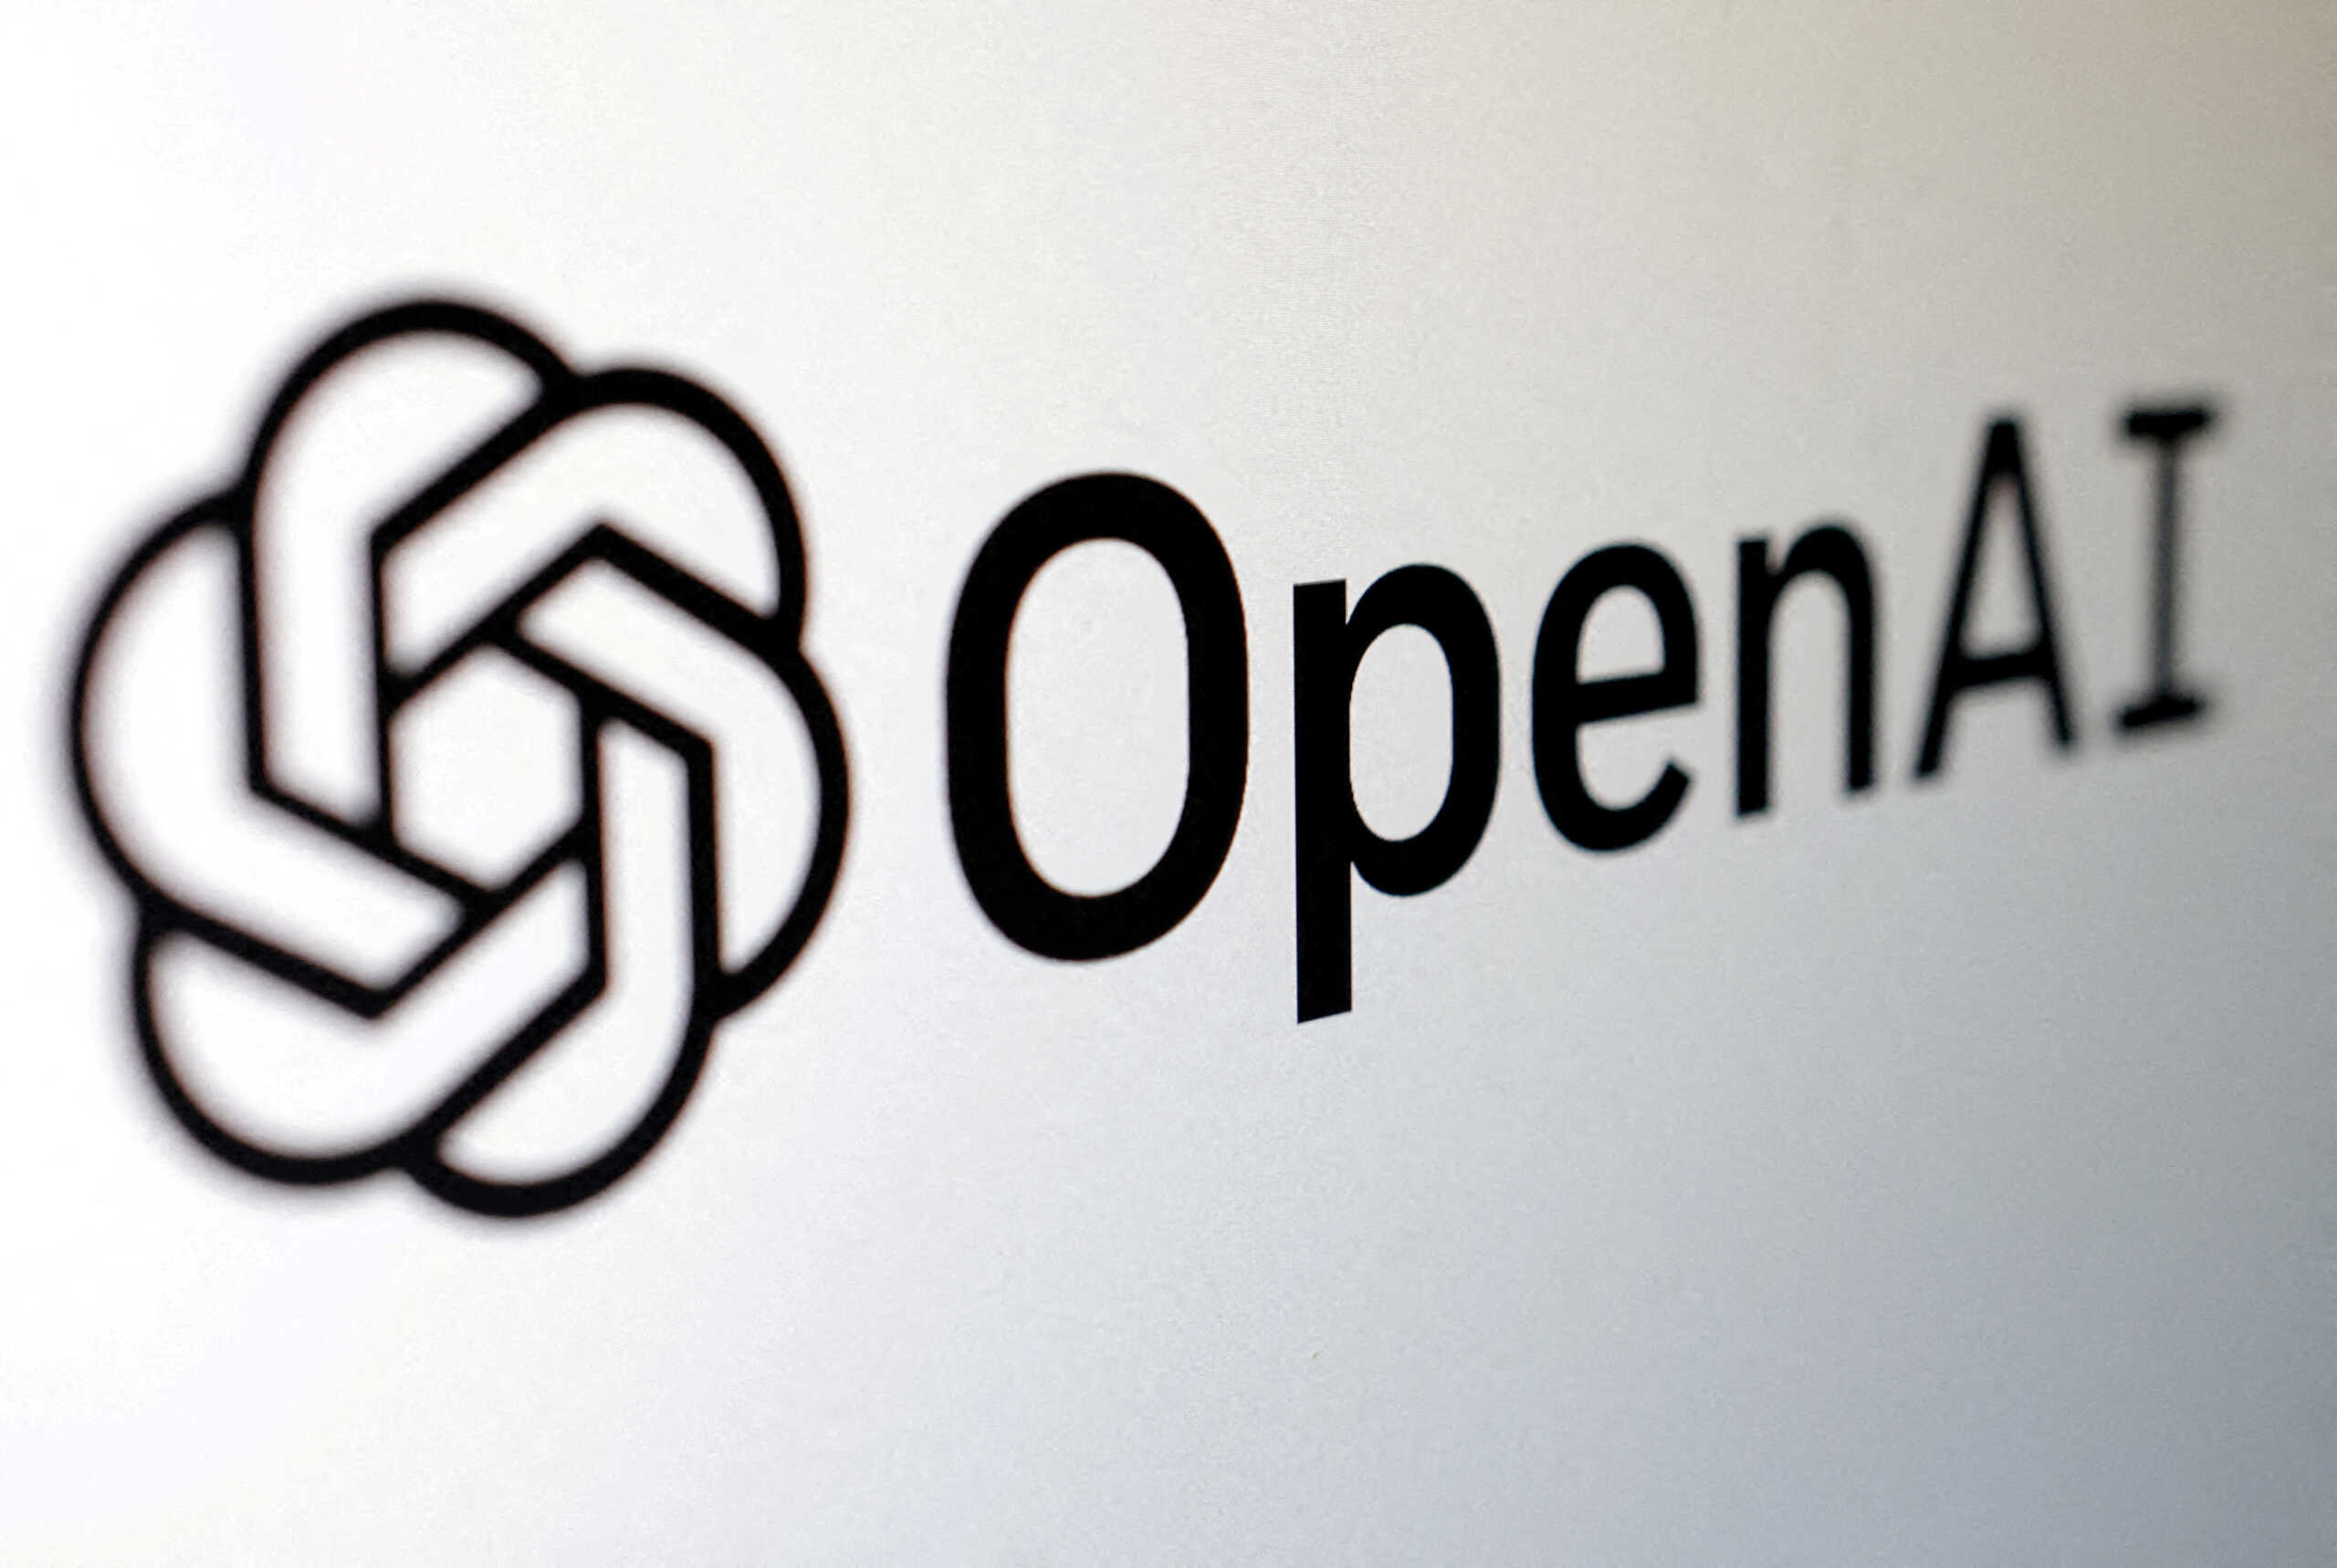 Ξεσηκωμός στην OpenAI – Το προσωπικό προειδοποιεί για μαζική φυγή μετά την απόλυση του Αλτμαν ο οποίος πηγαίνει στη Microsoft